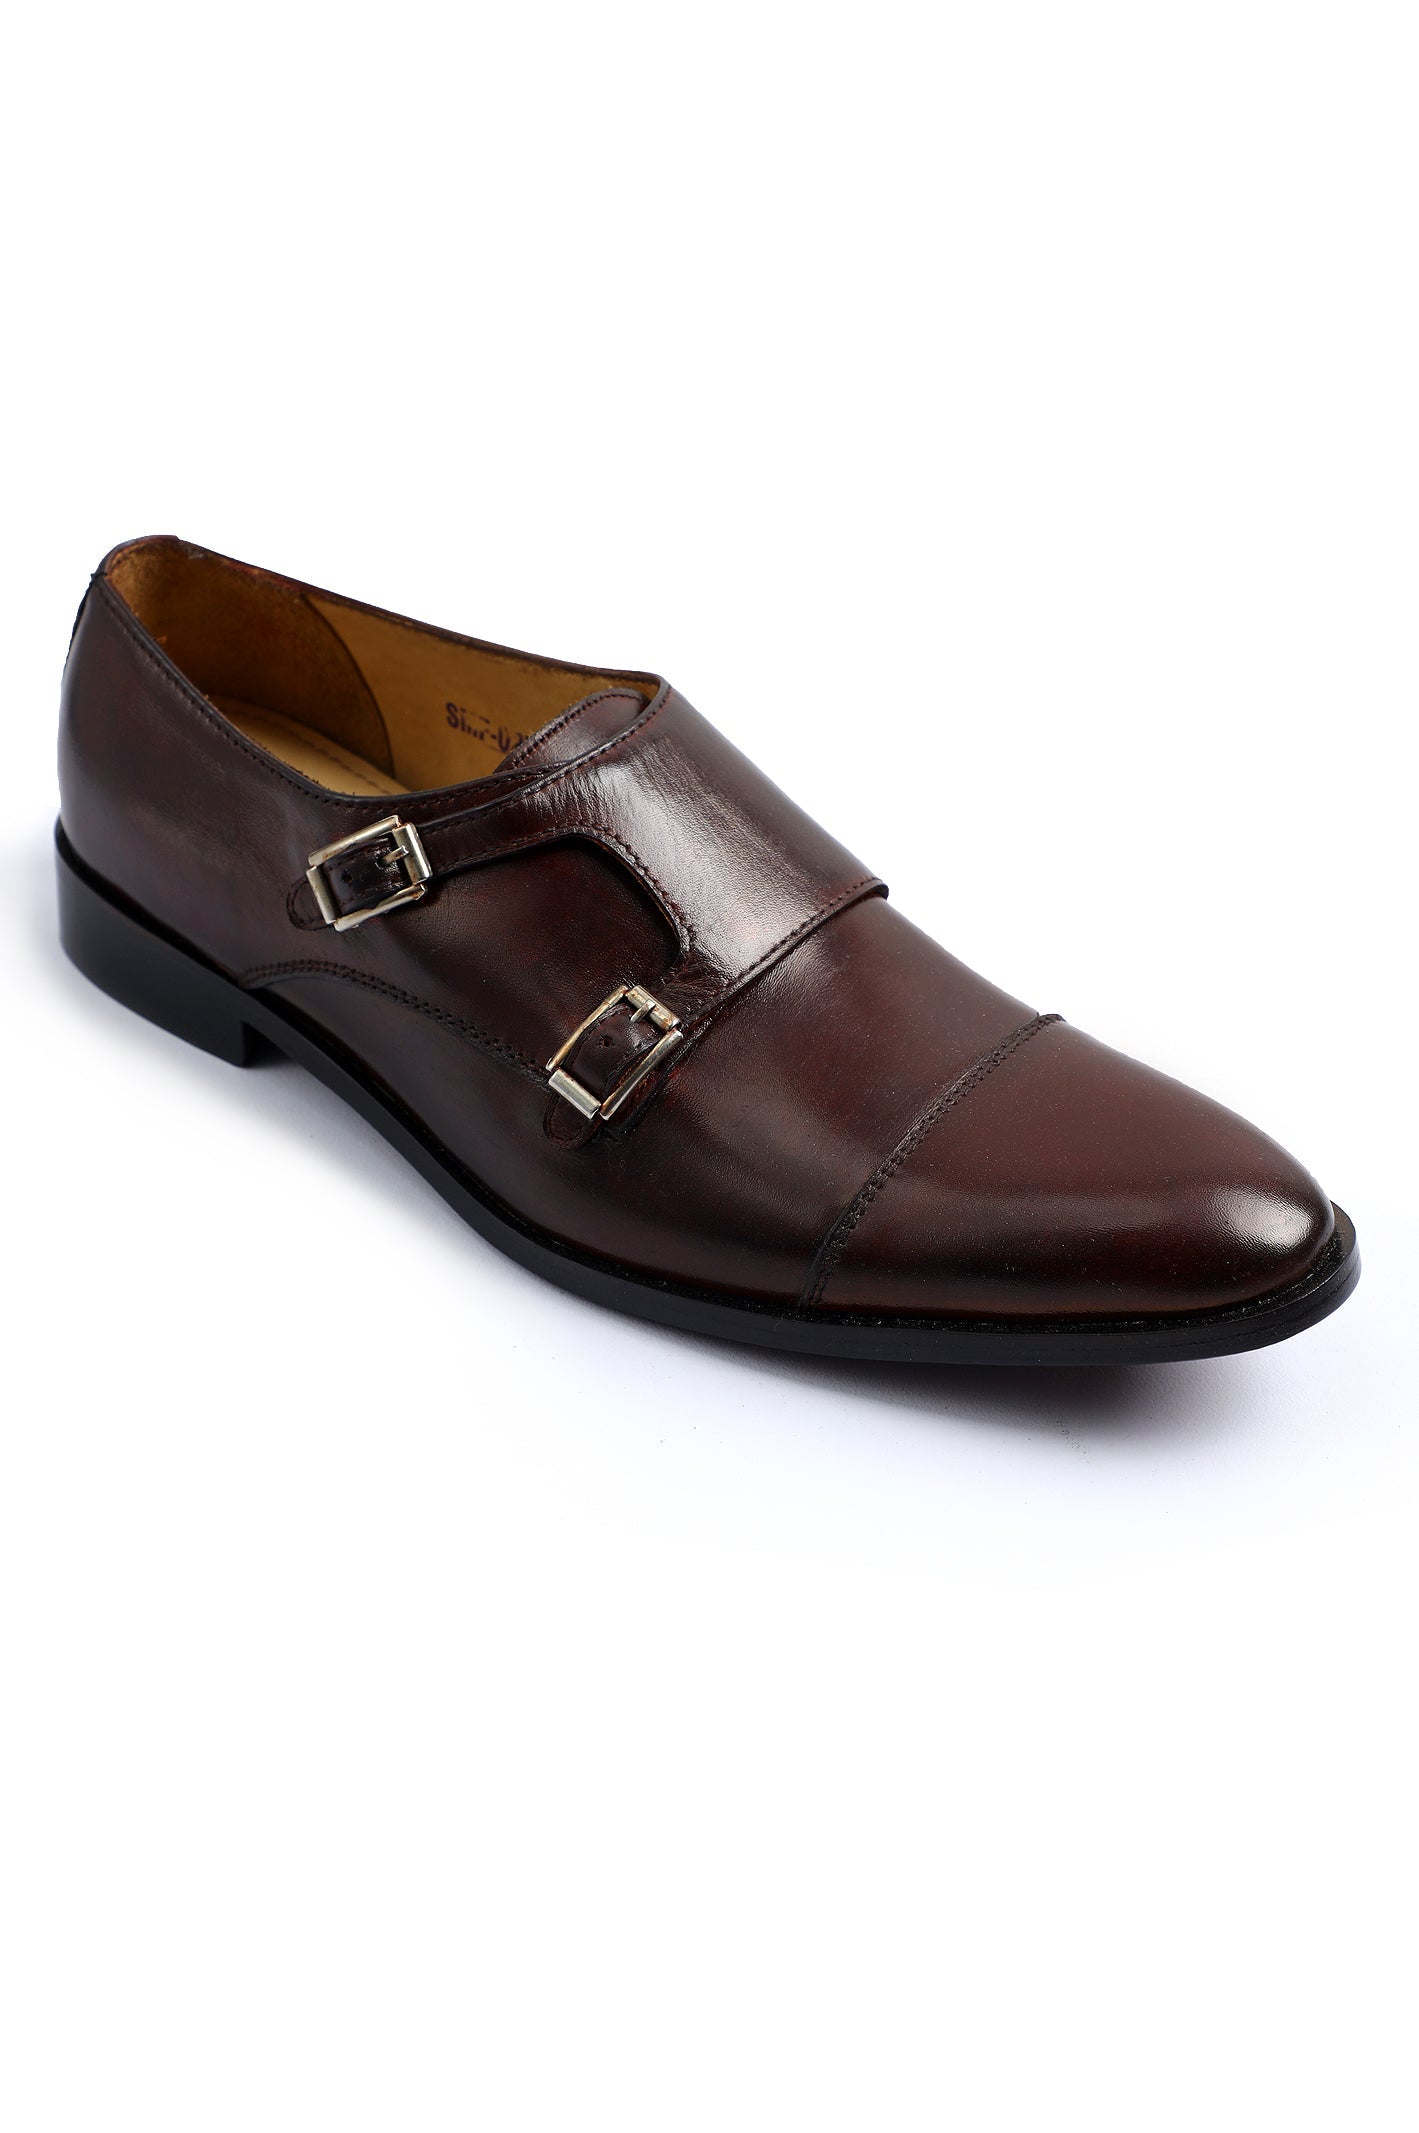 Formal Shoes For Men SKU: SMF-0255-WINE - Diners